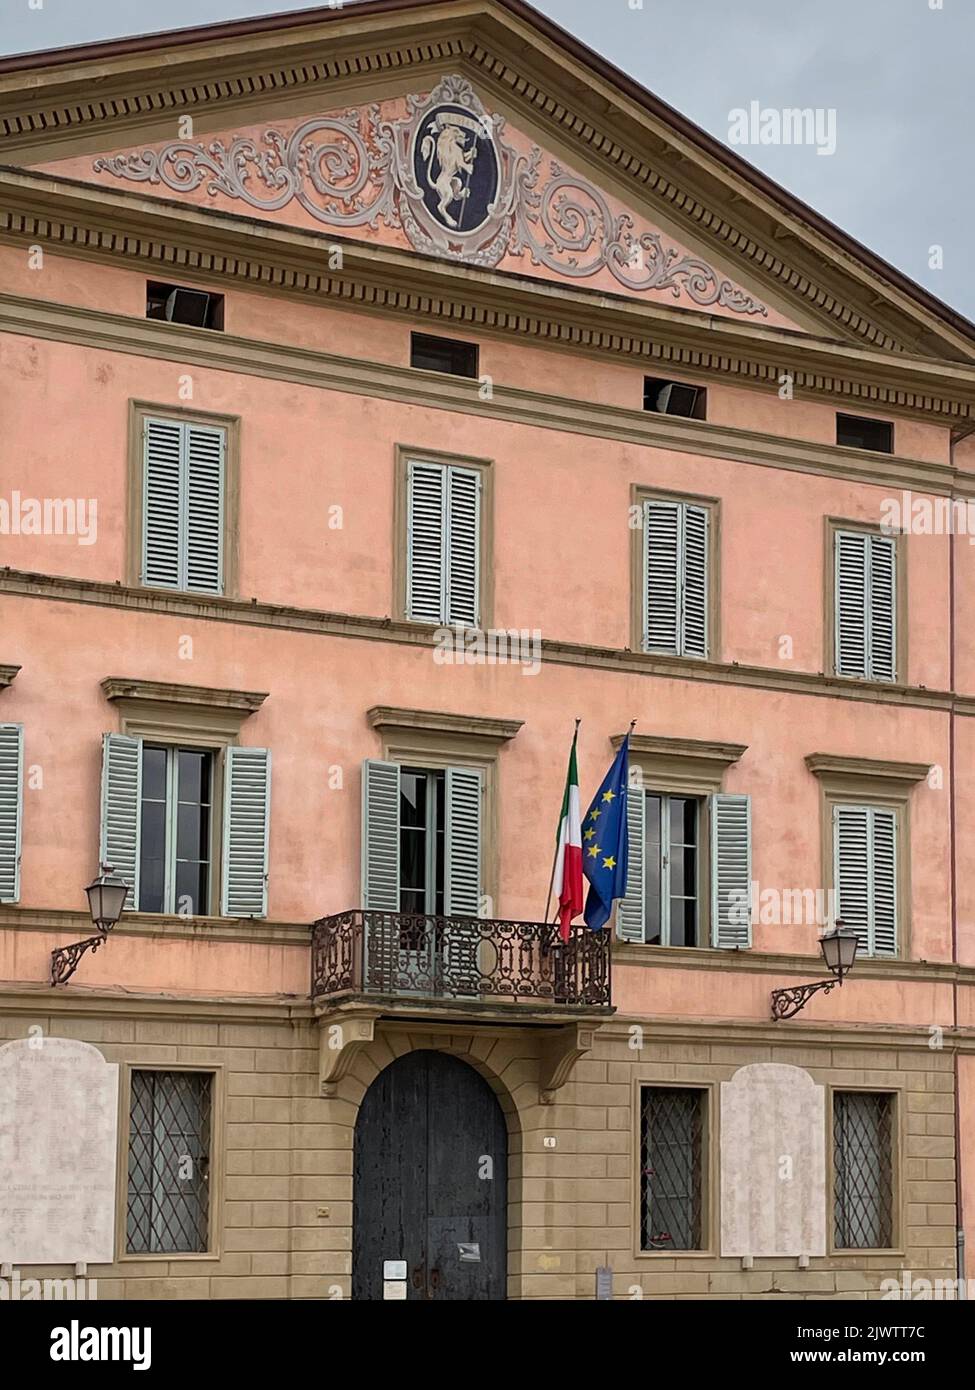 Castel San Pietro Terme, Italia. El Ayuntamiento del siglo 19th en la plaza principal de la ciudad (Piazza XX Settembre). Foto de stock